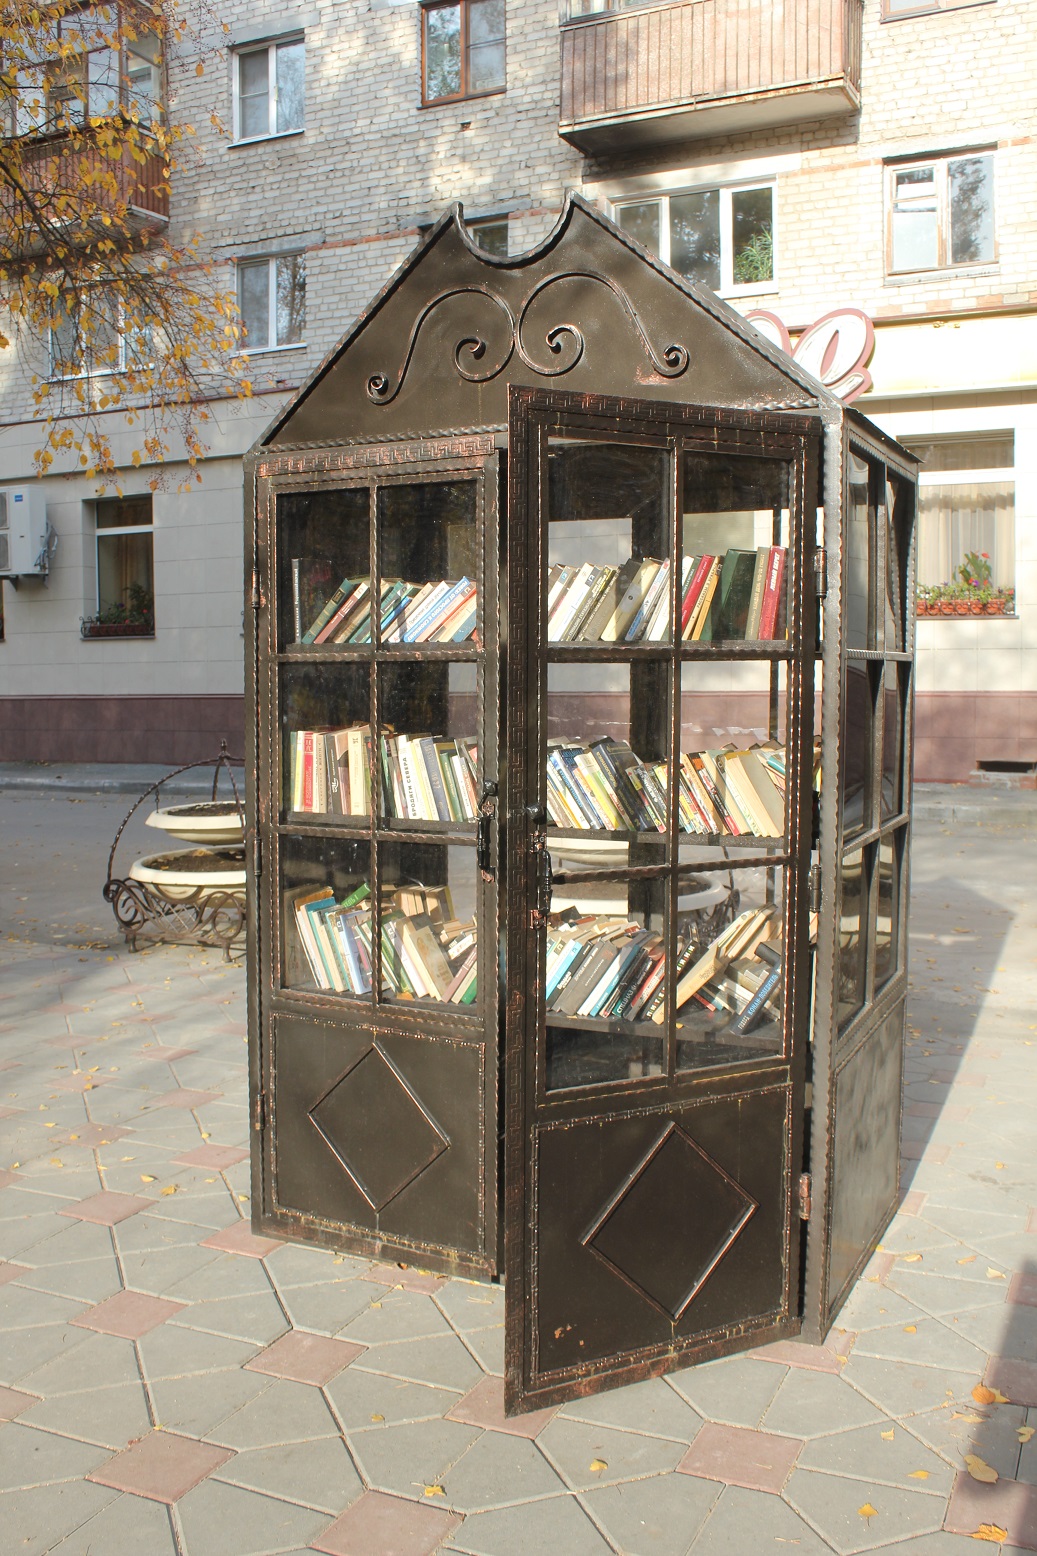 памятник-шкаф, книгообменник в Тюмени в сквере Романтиков